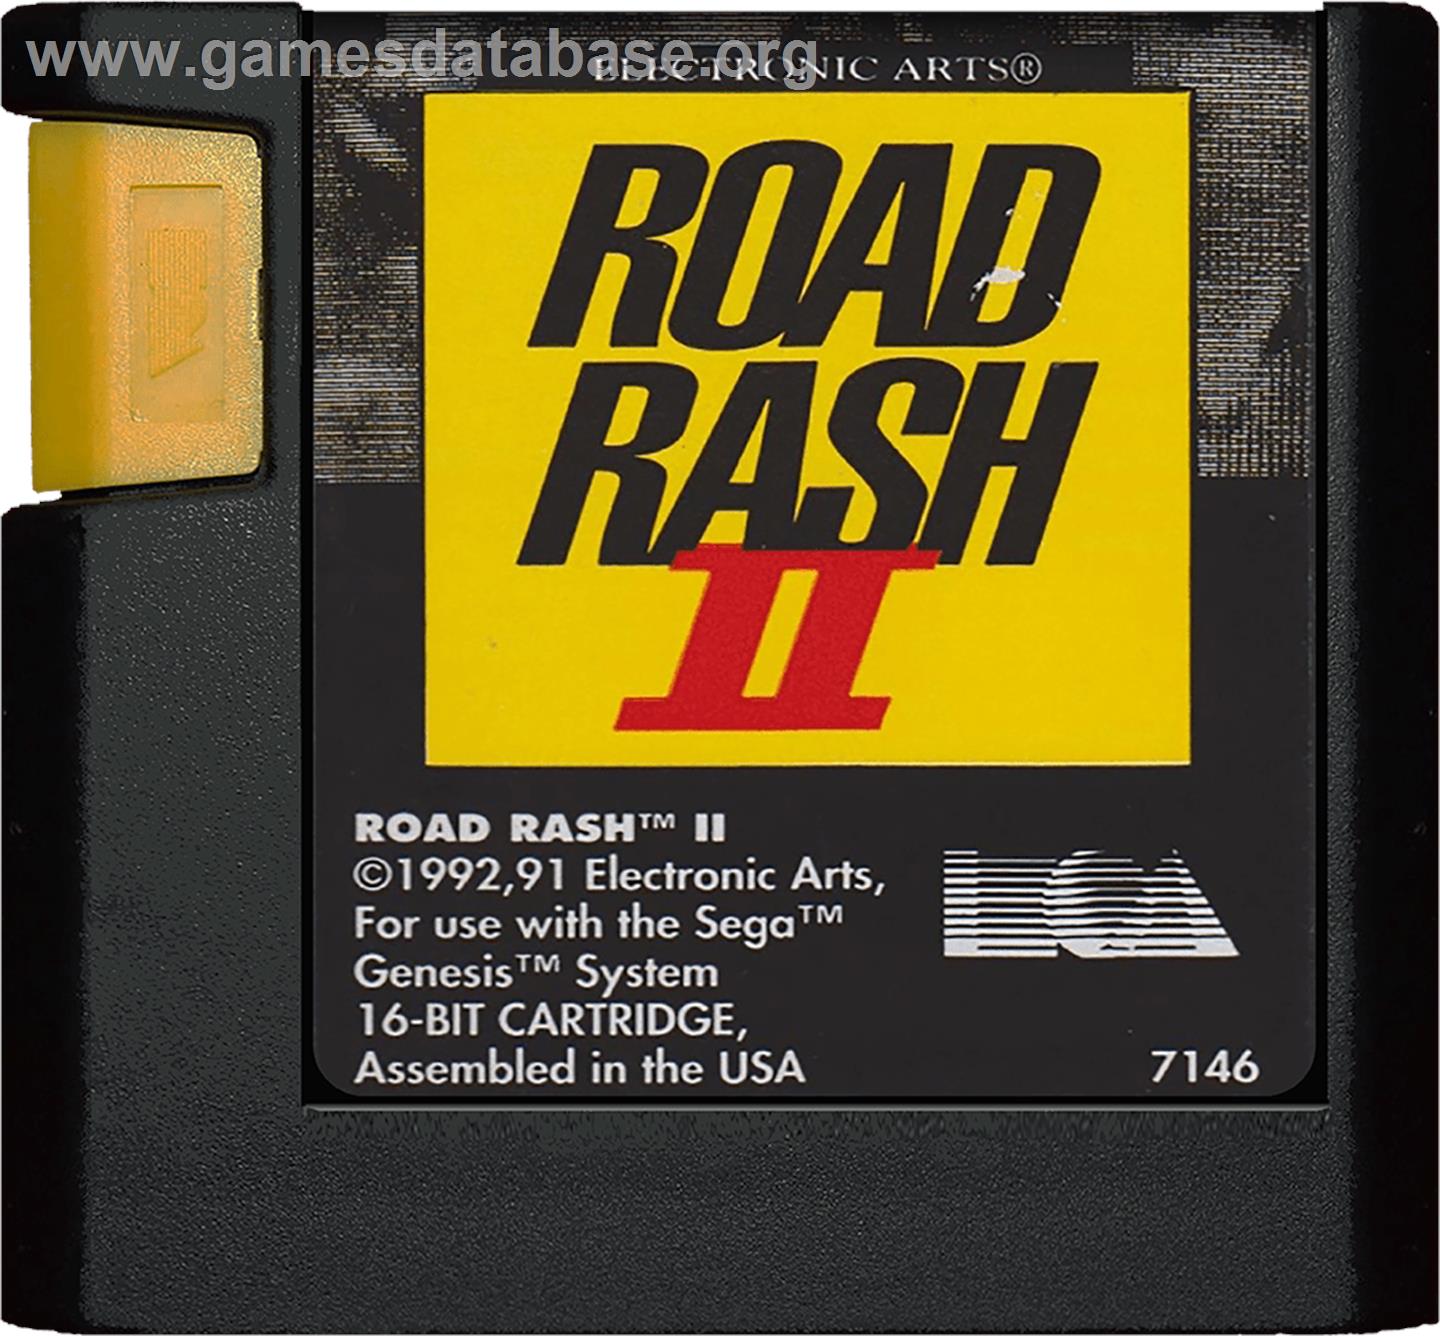 Road Rash 2 - Sega Genesis - Artwork - Cartridge